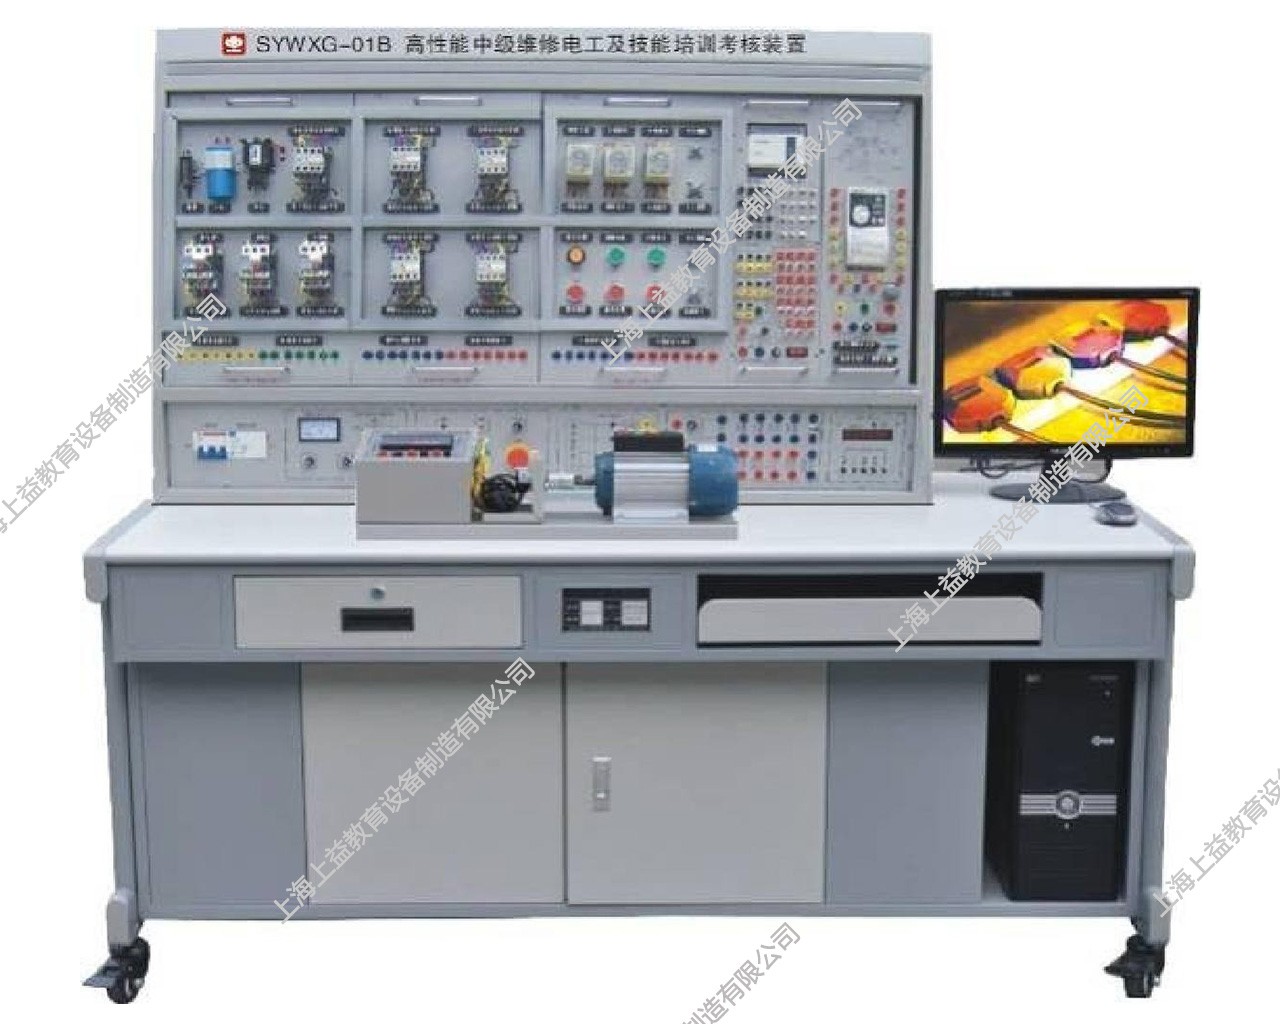 SYWXG-01B高性能中级维修电工及技能培训考核装置